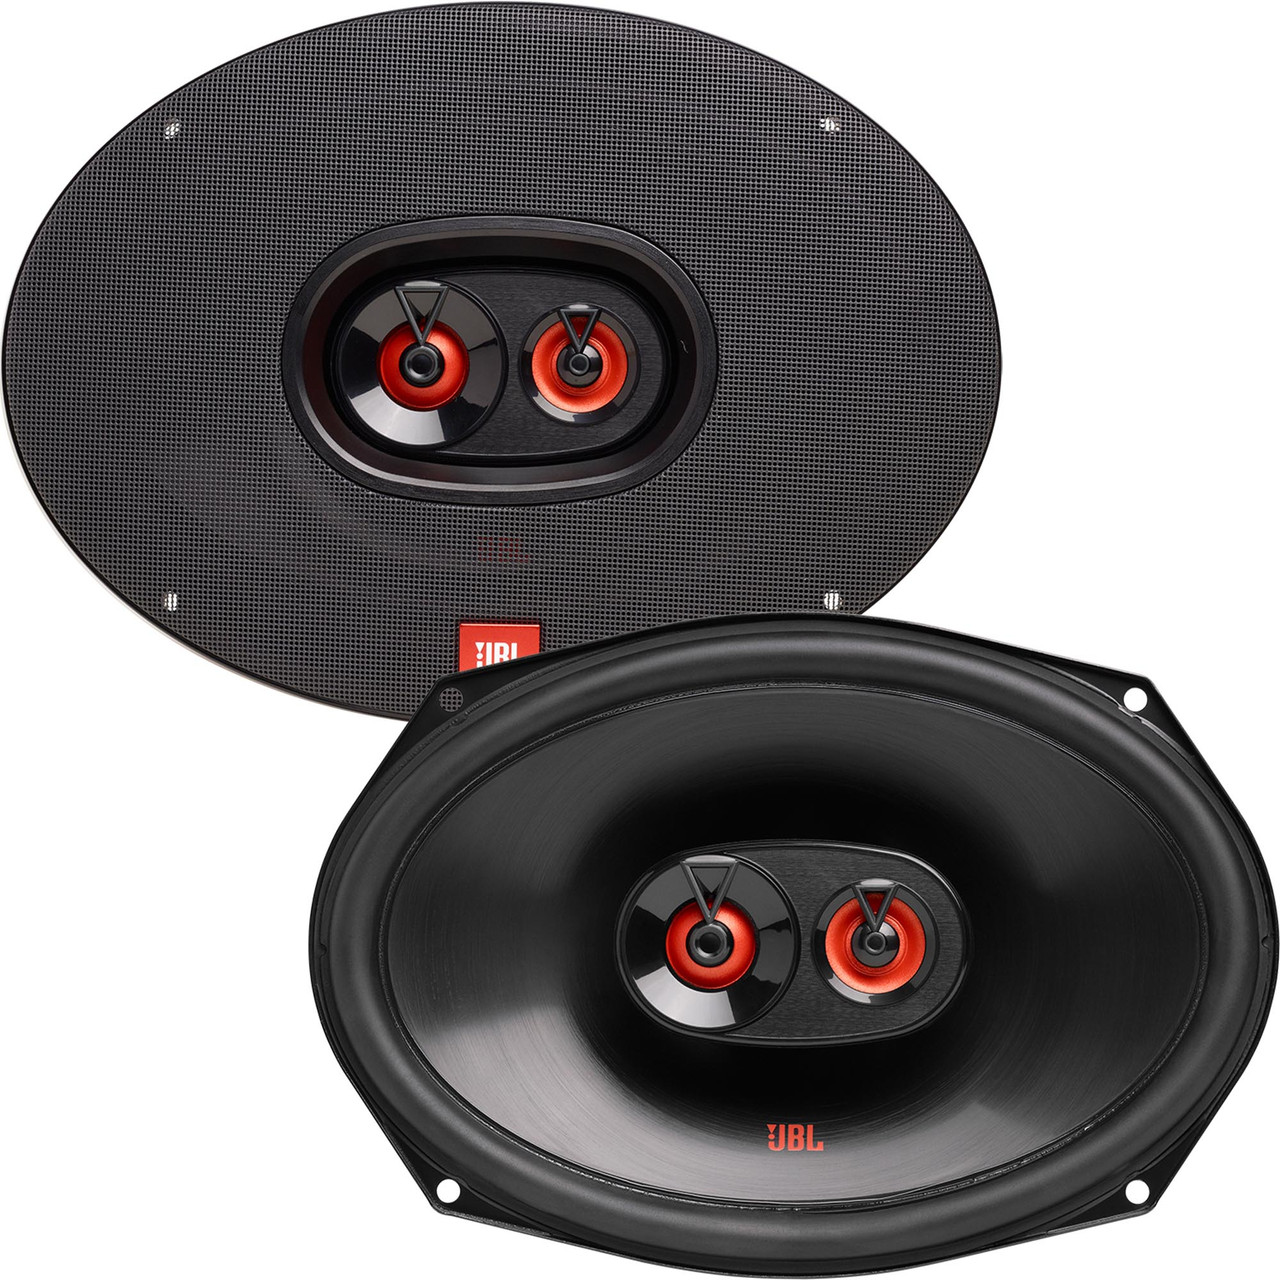 Læring billig Bemyndige JBL CLUB-9632AM 6” x 9” Three-way car audio speaker - Creative Audio